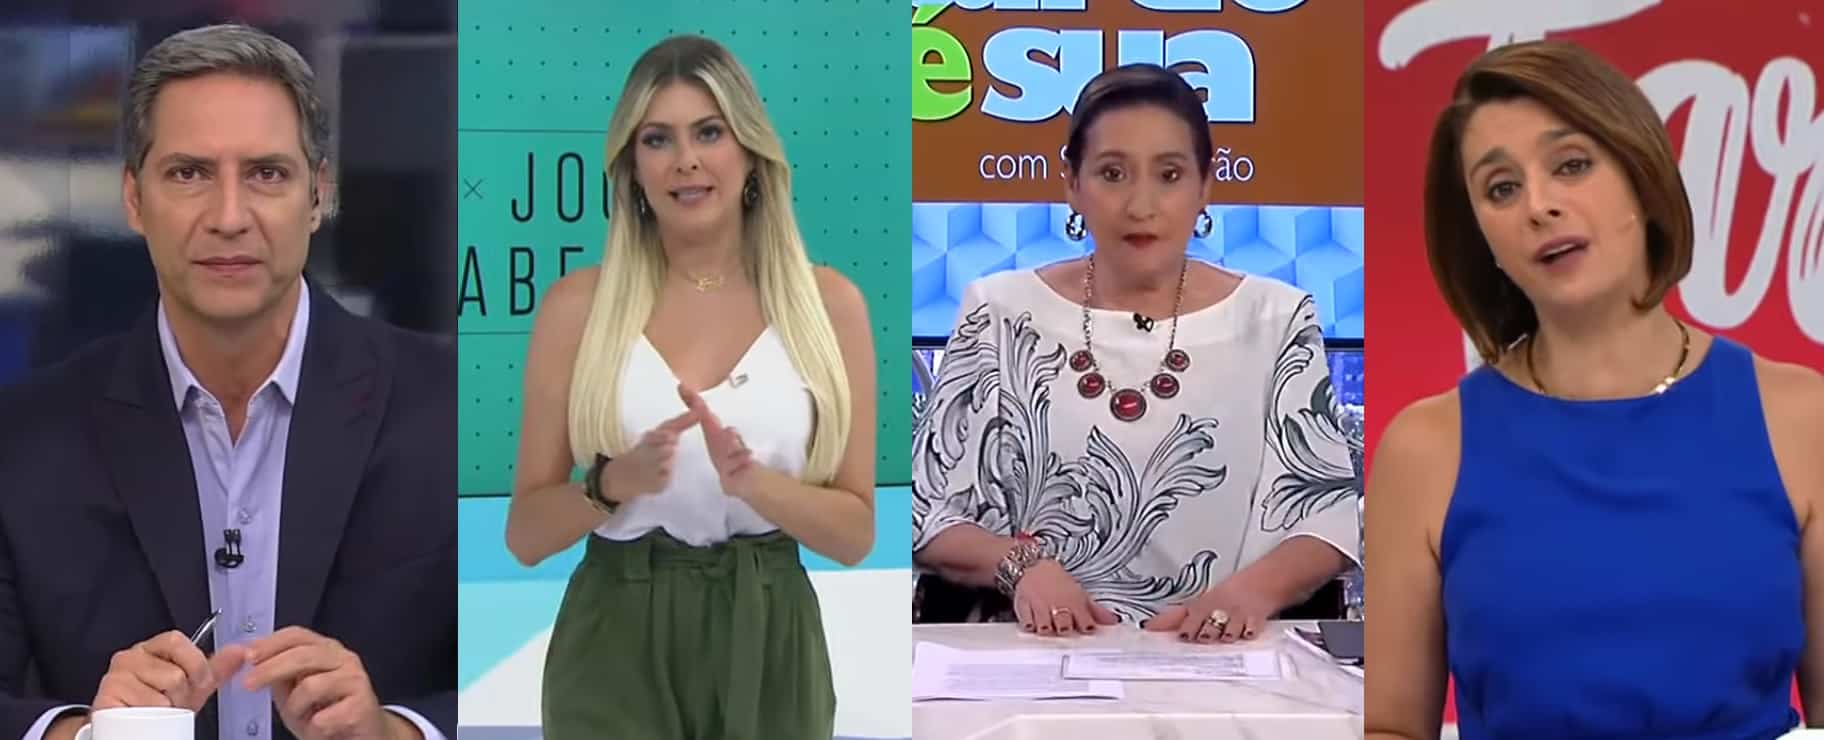 Sonia Abrão vence Catia Fonseca, mas Lacombe sofre derrota para Renata Fan